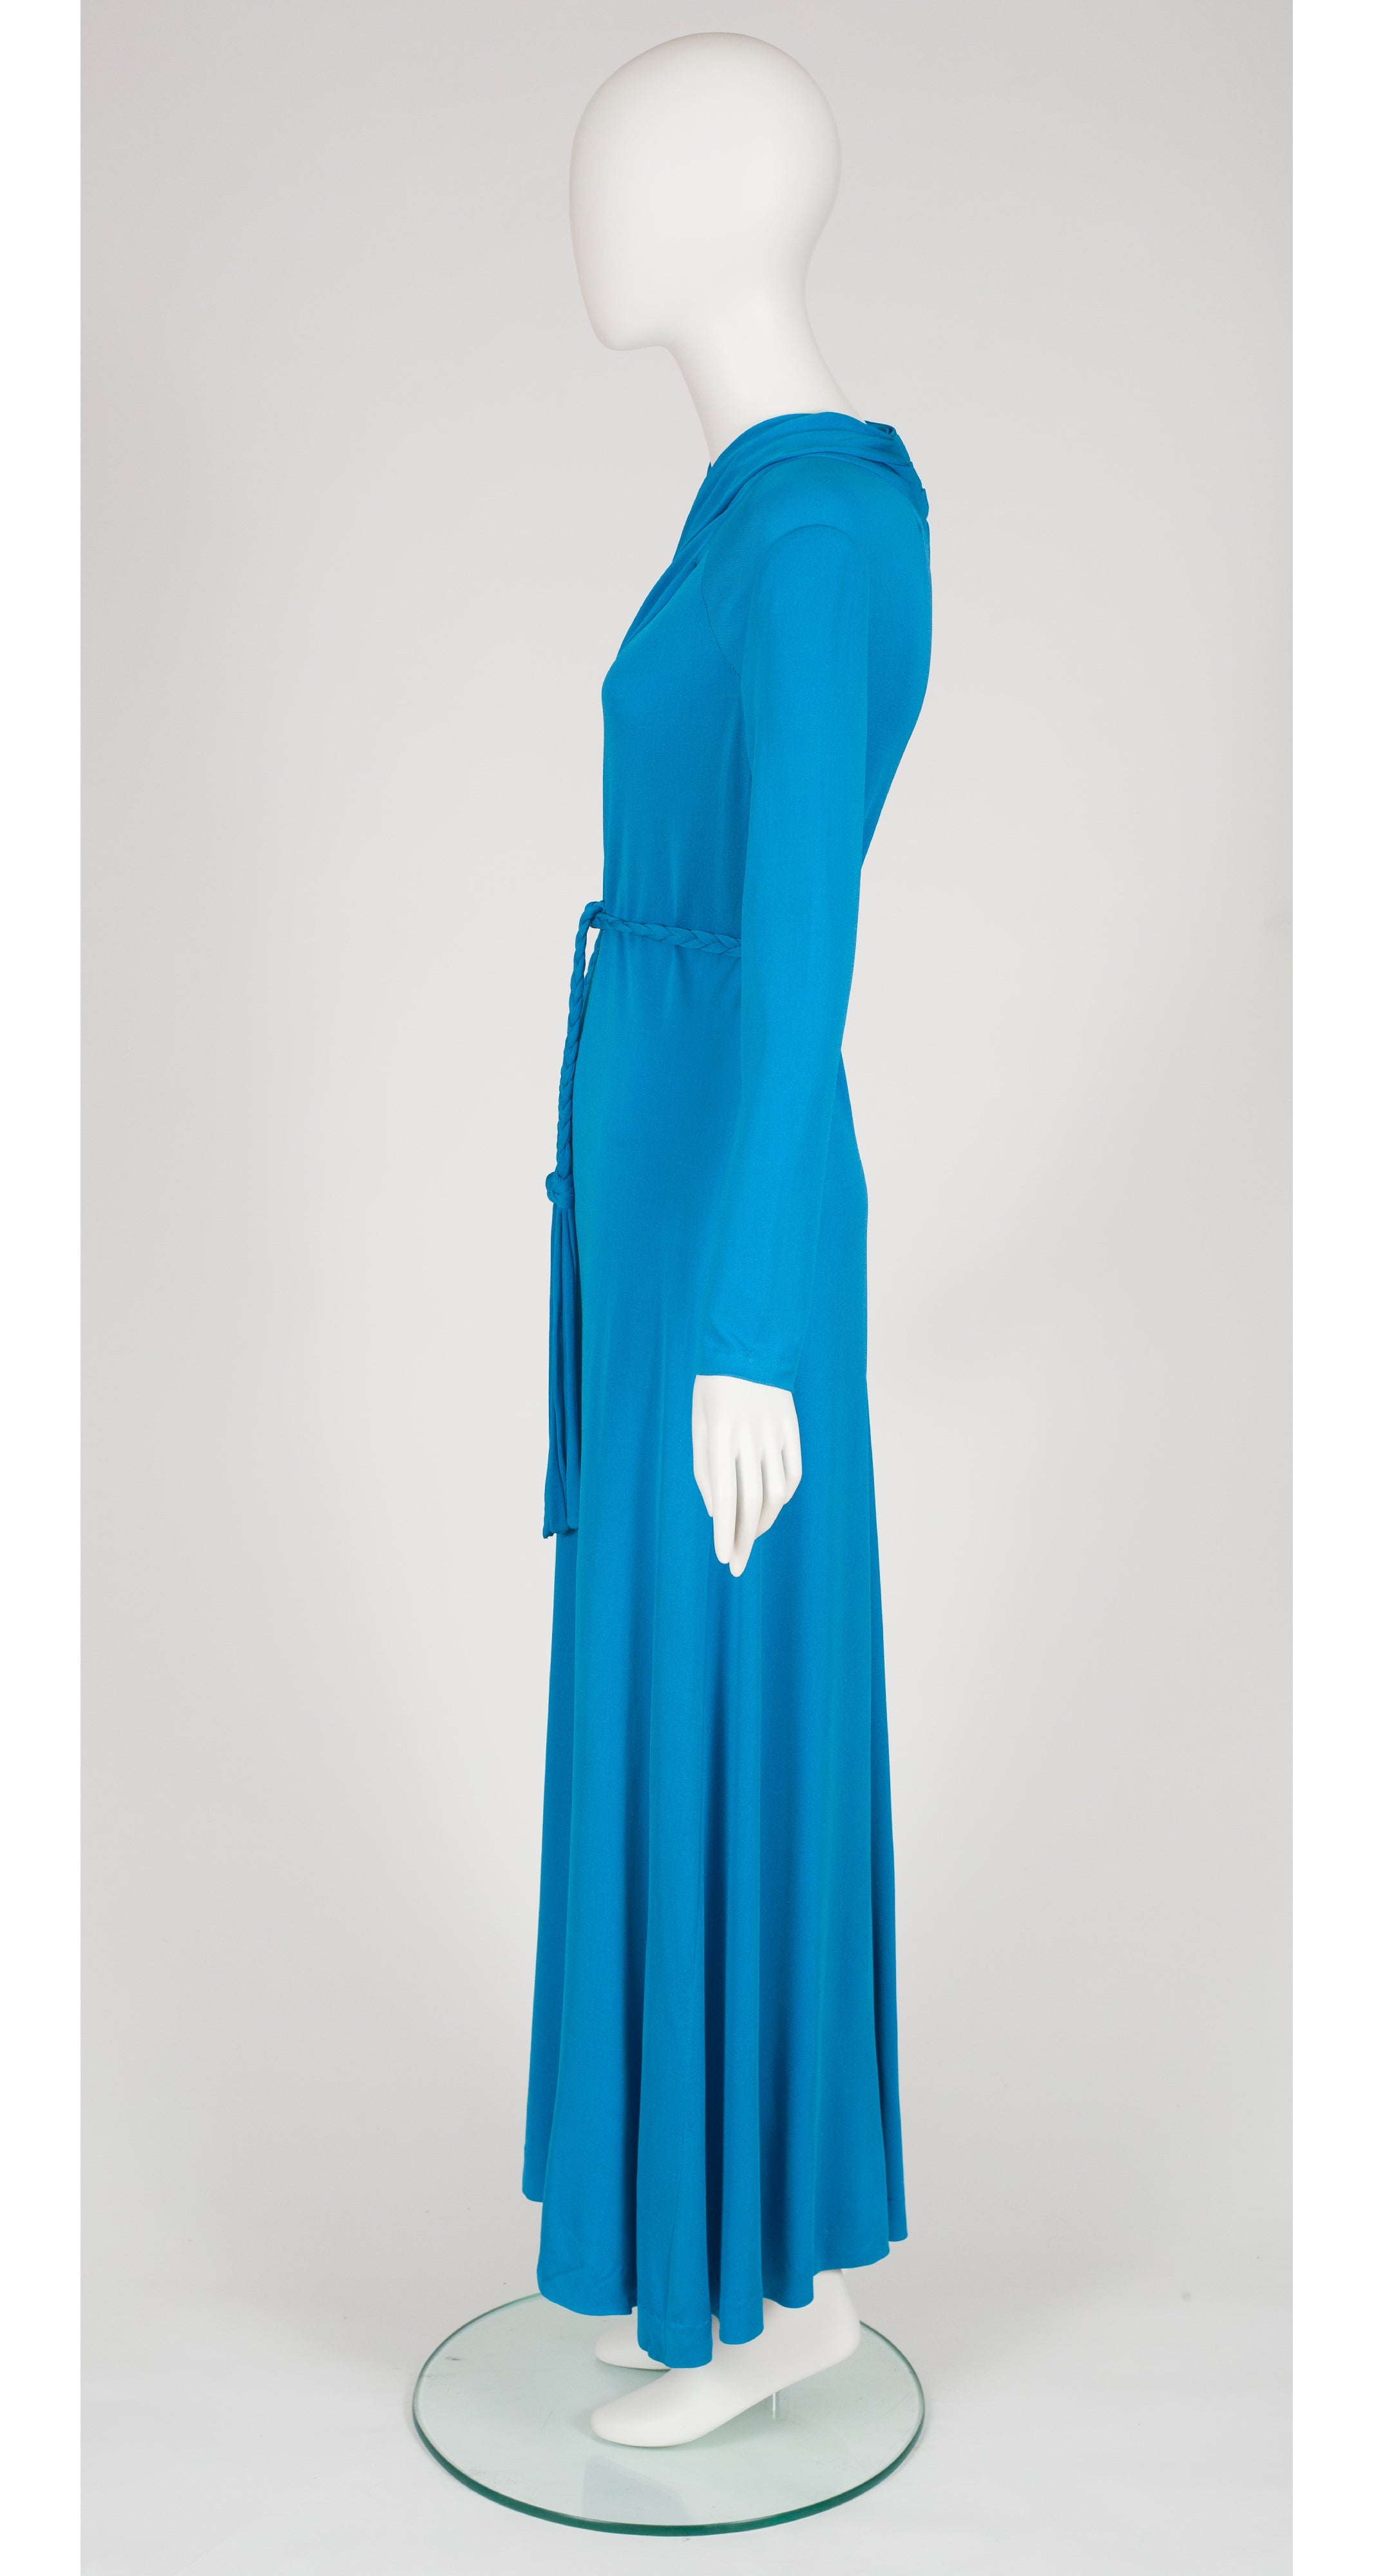 1970s Italian Blue Rayon Jersey Rope Belt Dress